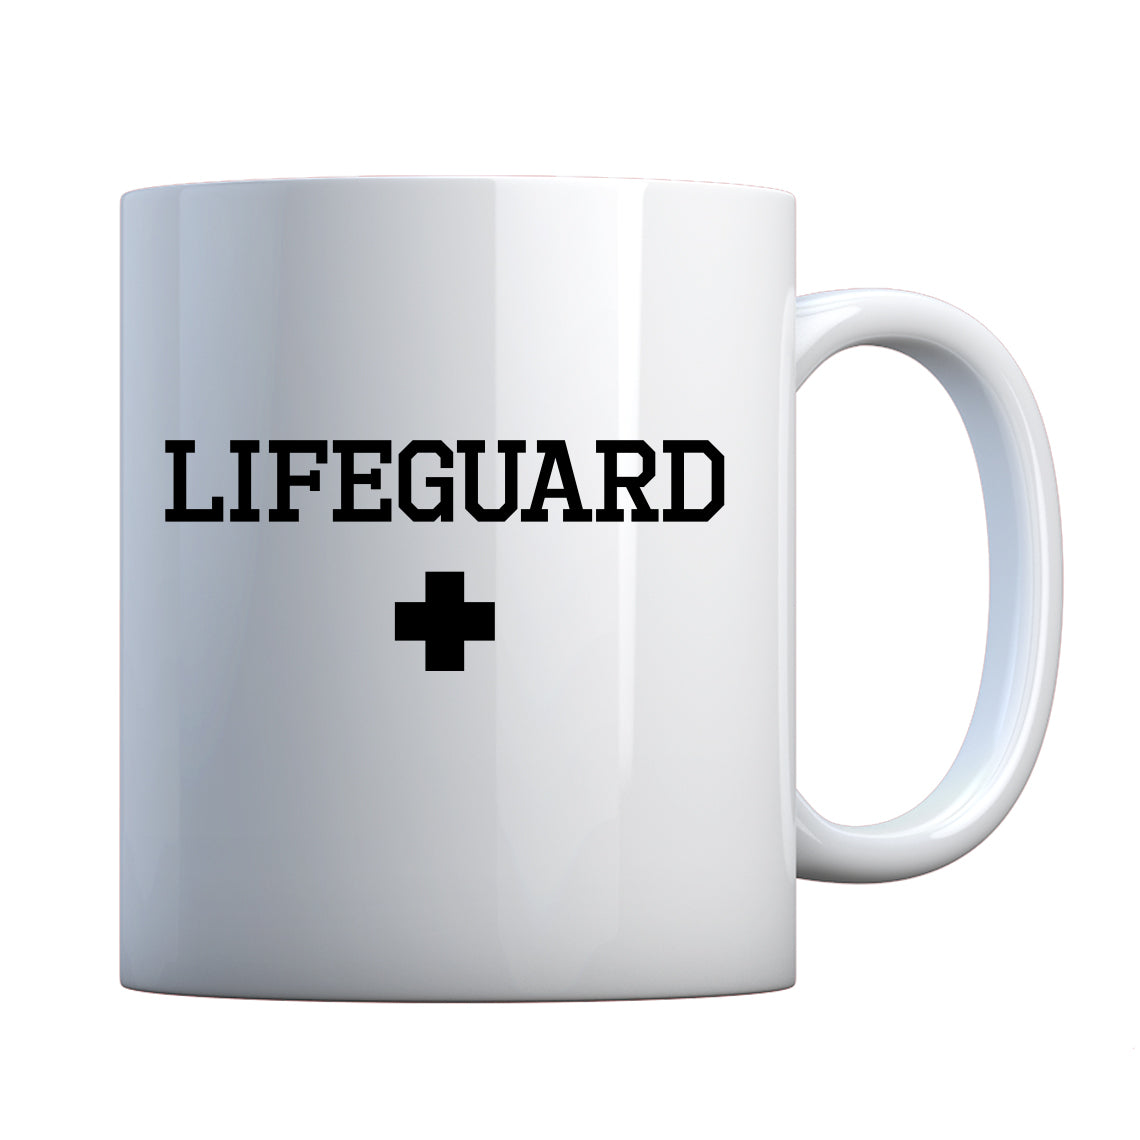 Lifeguard Ceramic Gift Mug